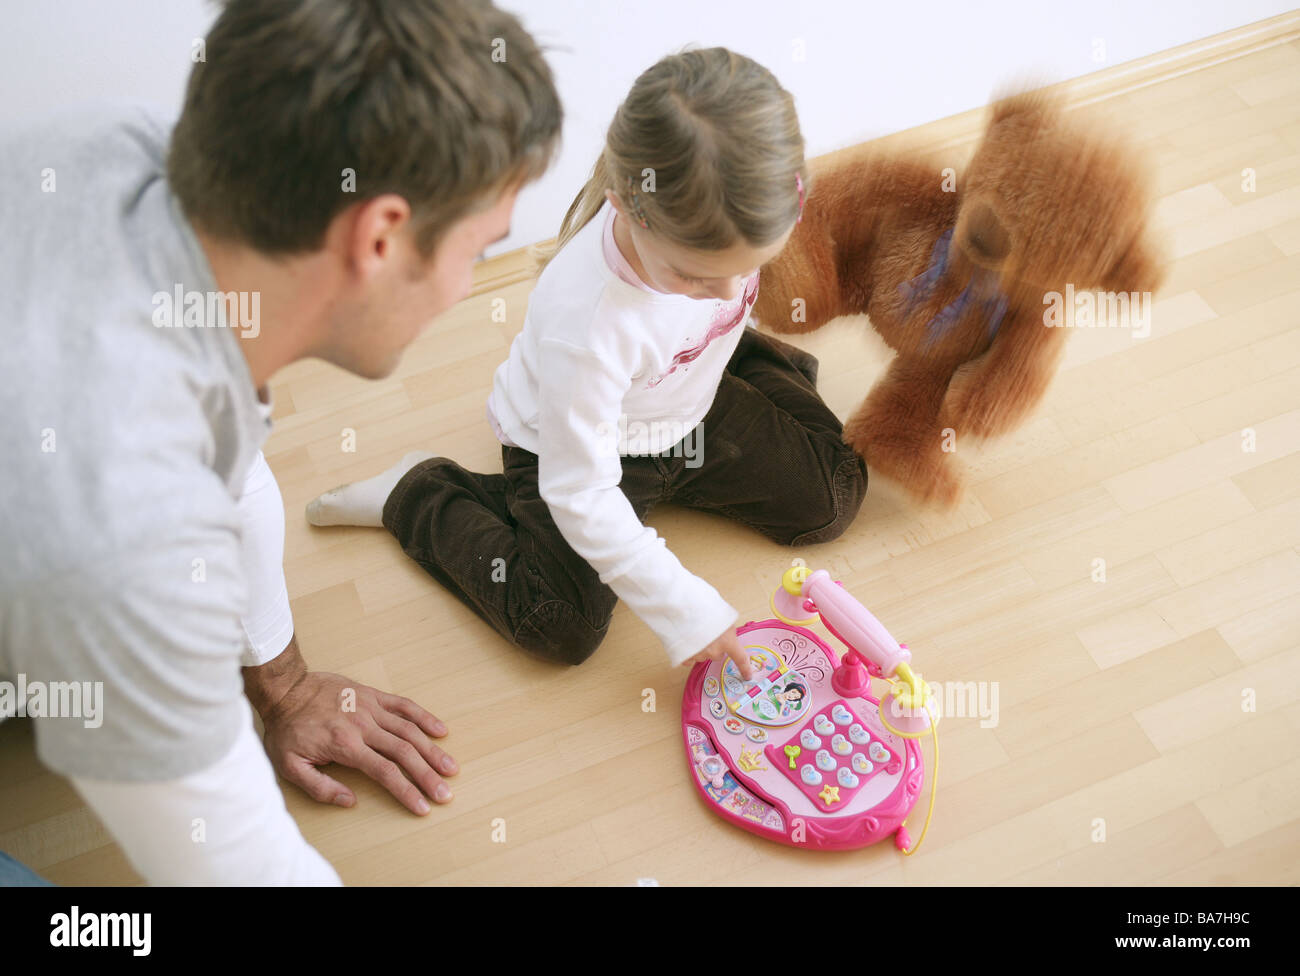 Père et fille (3-4 ans) à jouer avec un jouet téléphone et un ours en peluche, Munich, Allemagne Banque D'Images